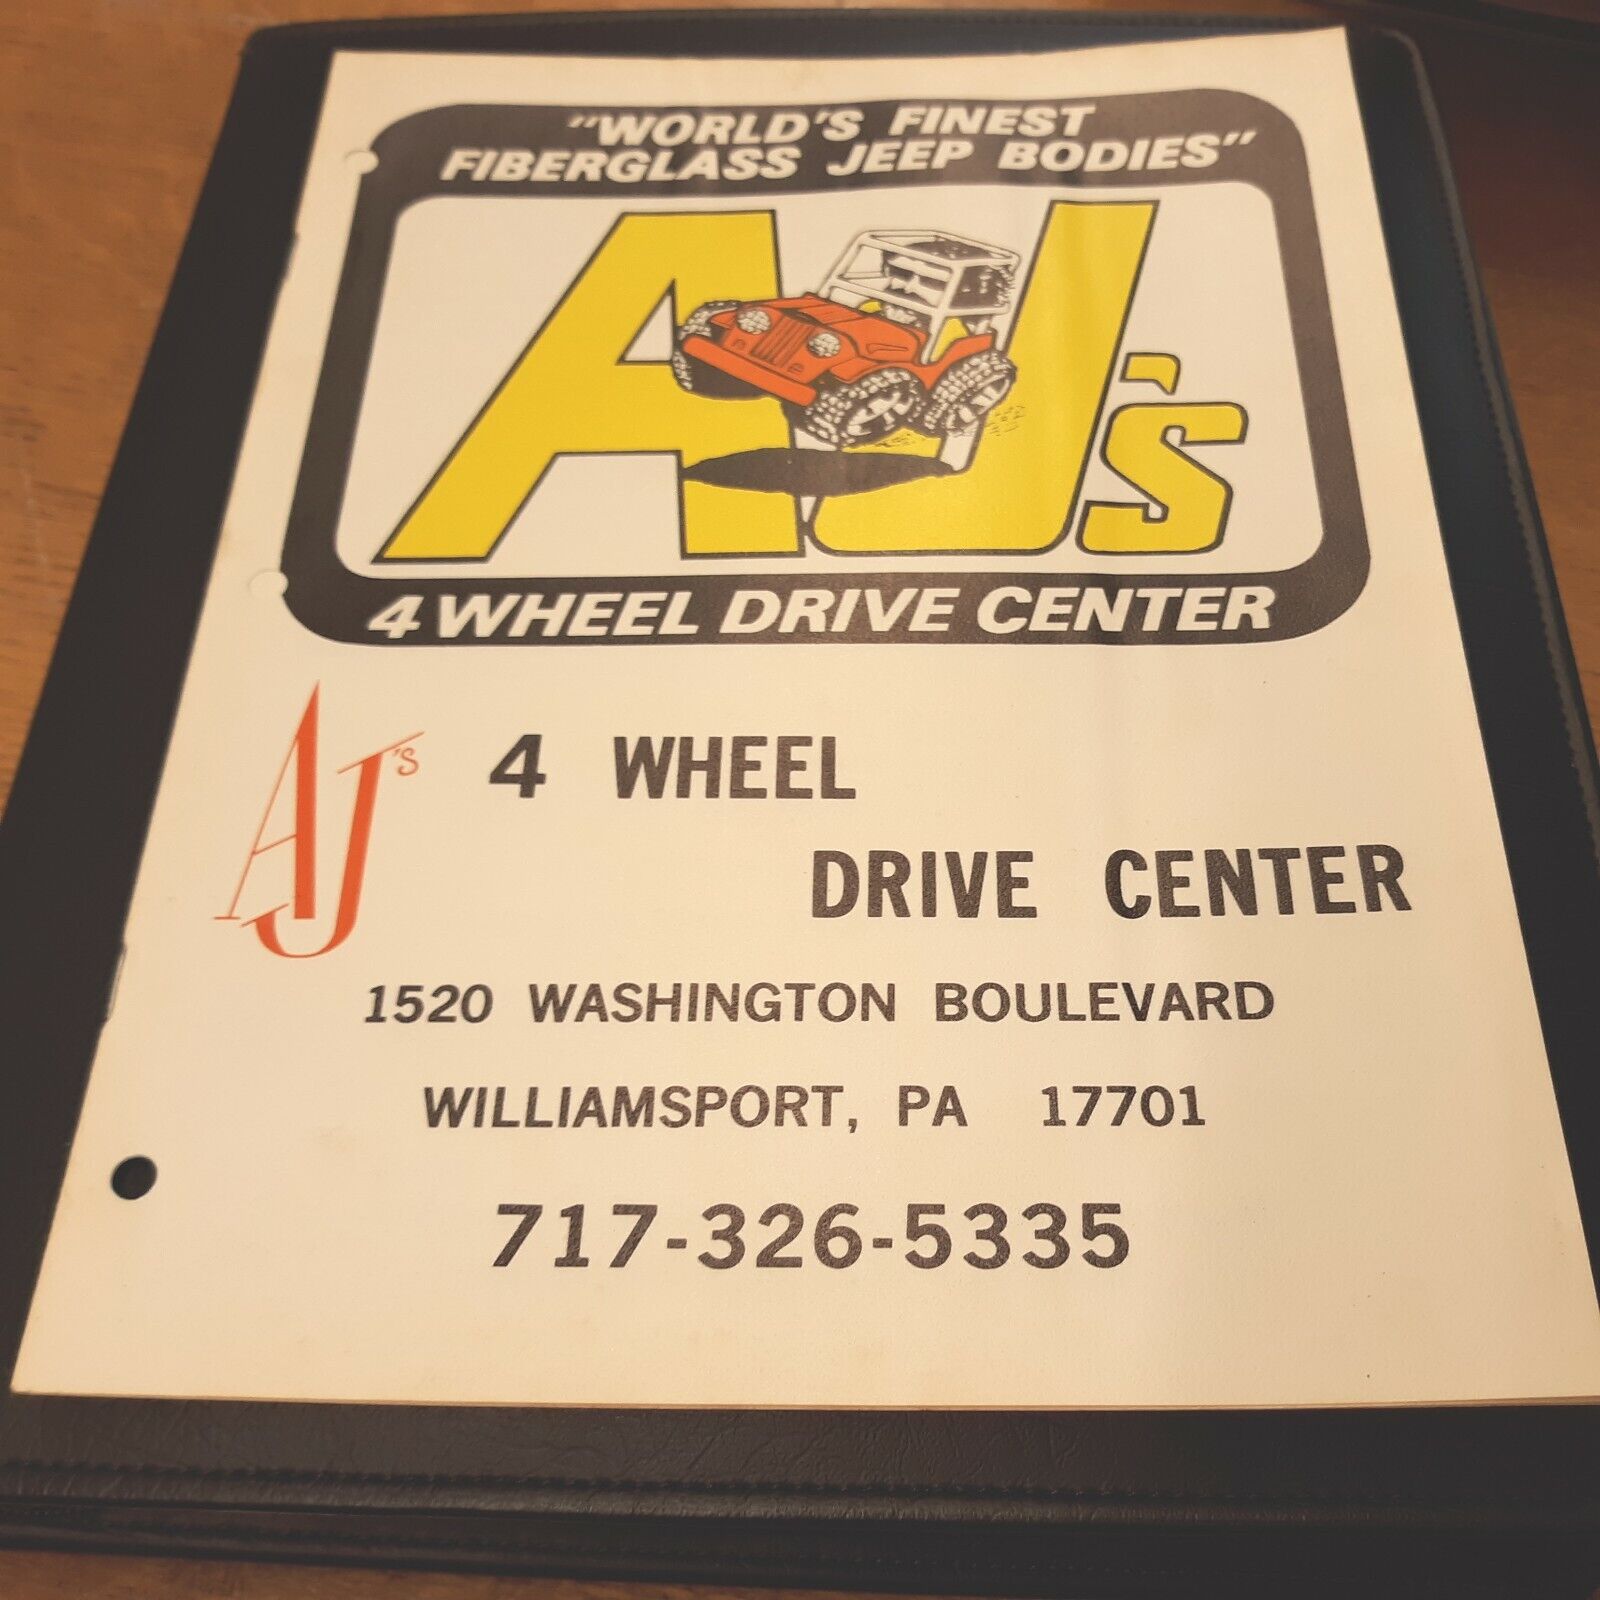 AJ\'s 4 Wheel Drive Center Fiberglass Jeep Bodies Williamsport PA 8.5x11 Brochure